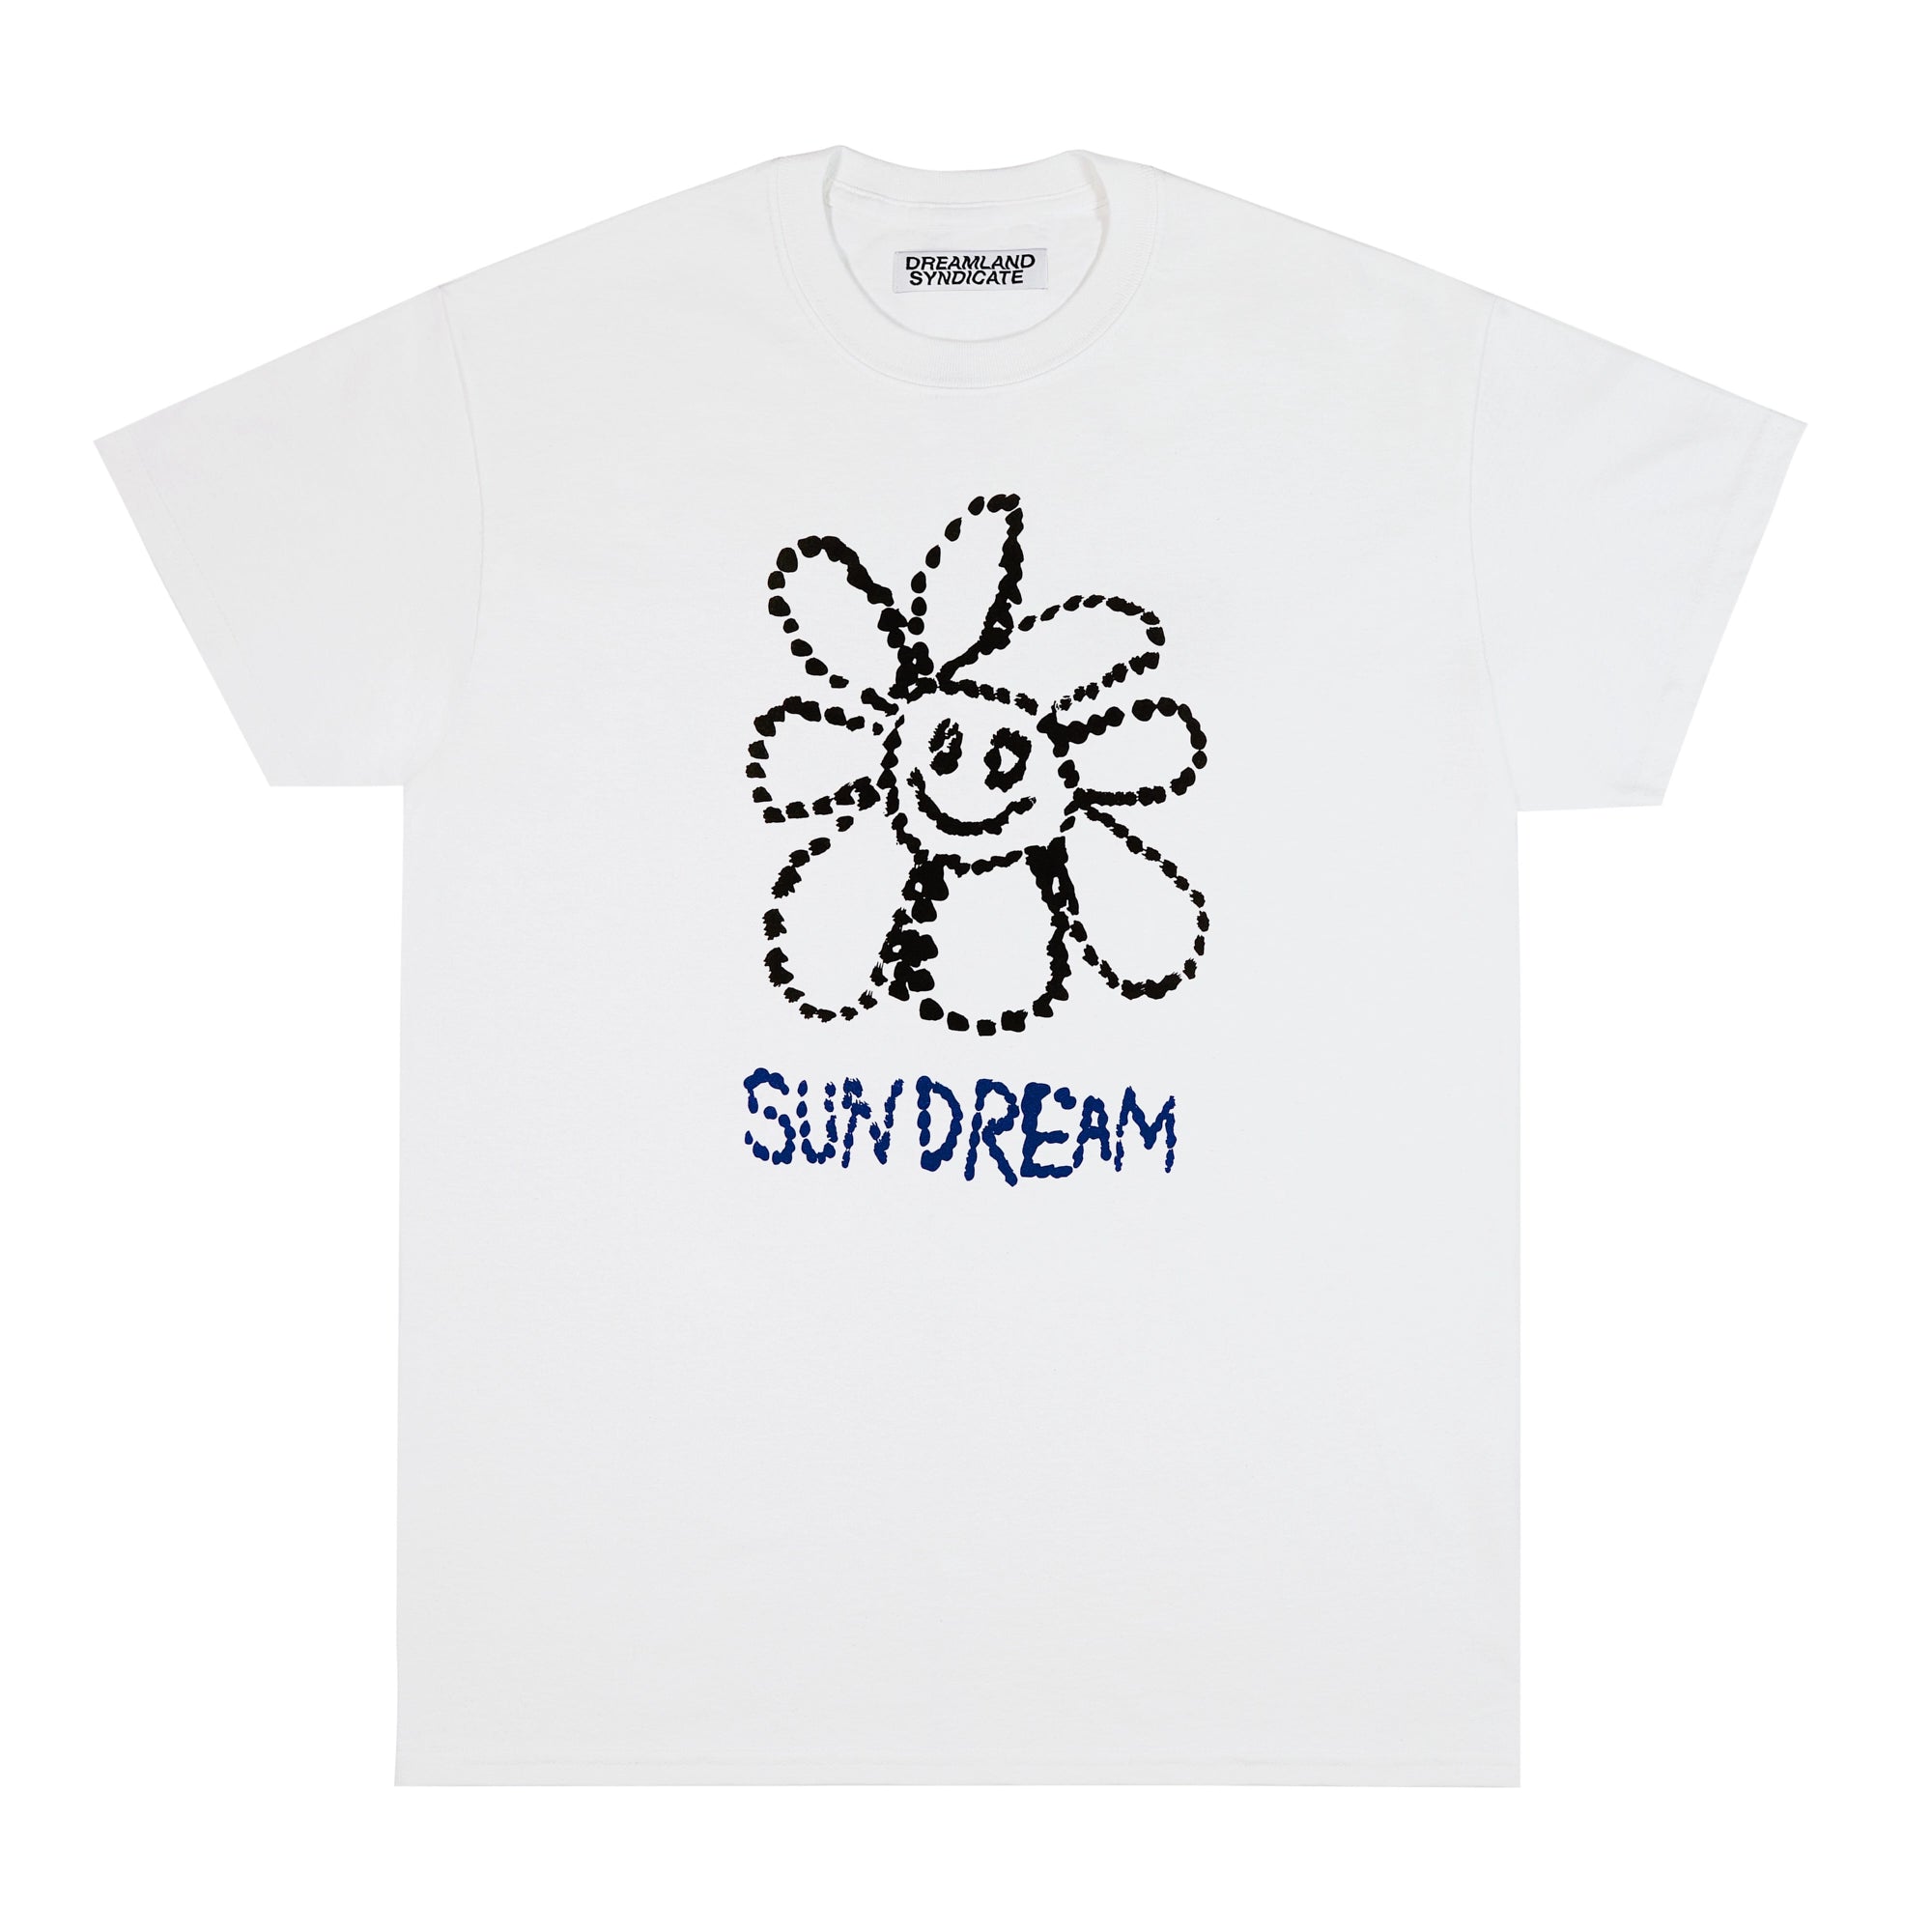 Sundream T-Shirt